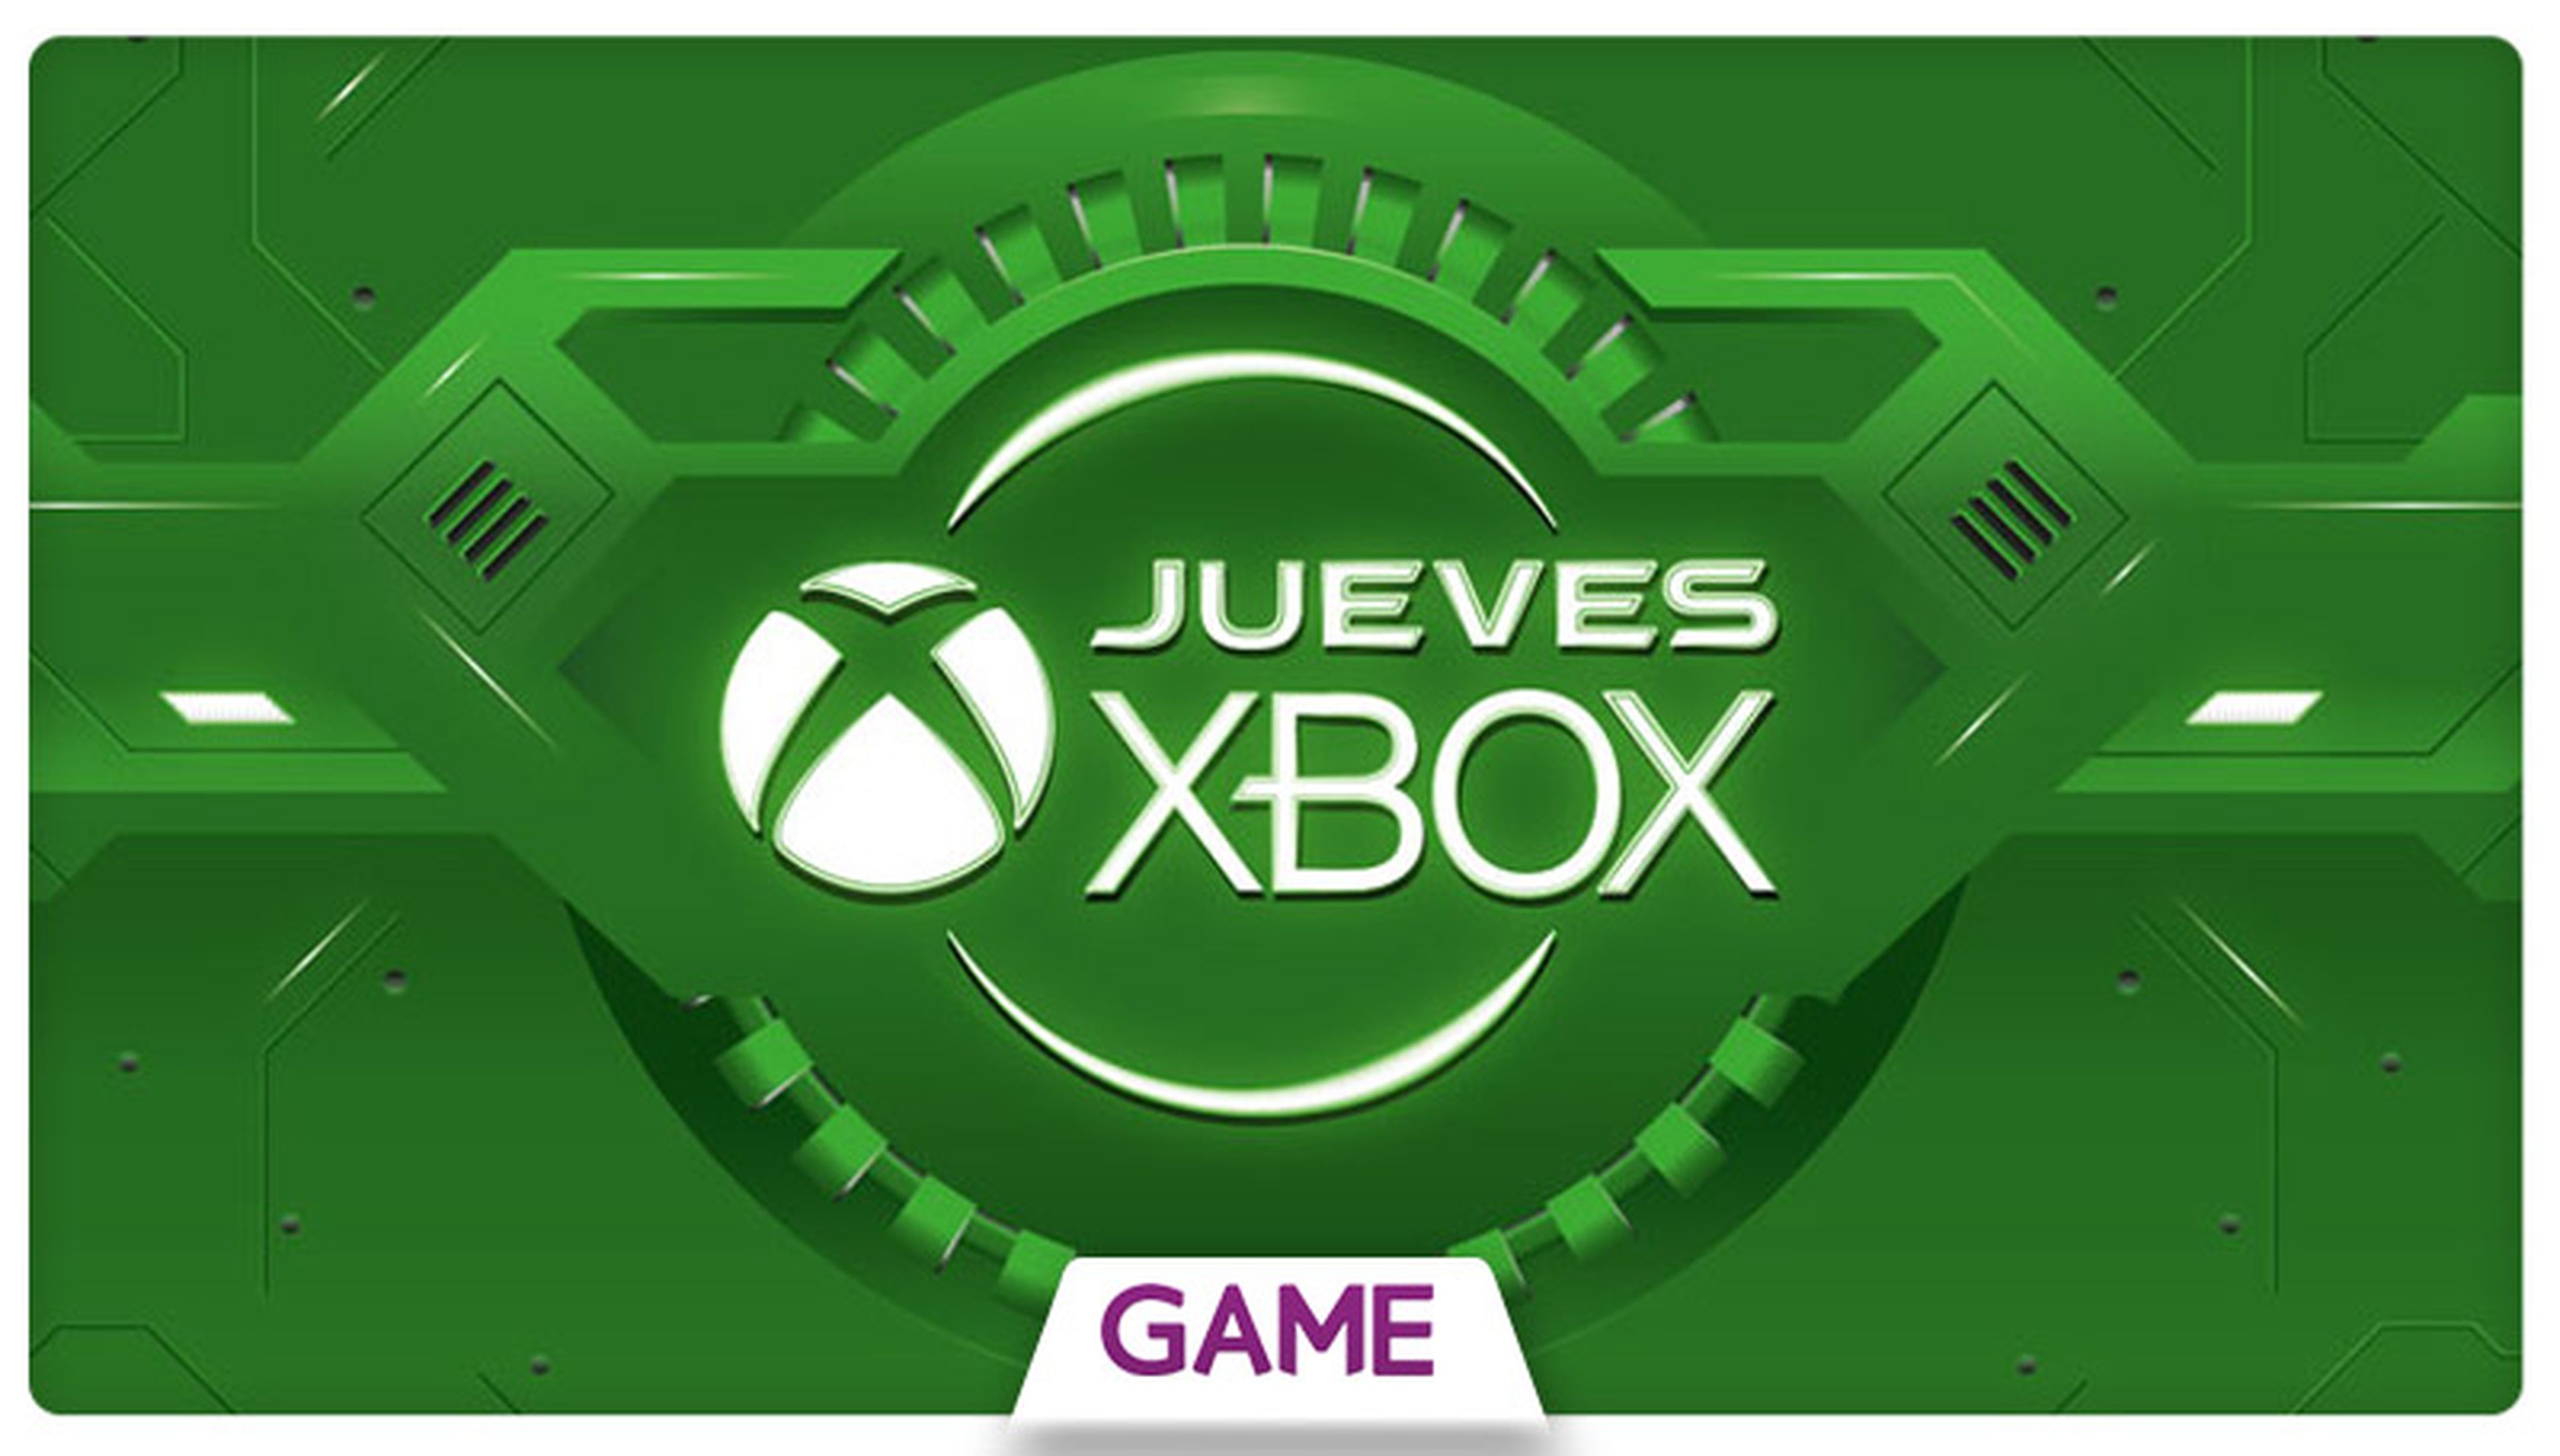 Jueves Xbox en GAME: Ofertas del 13/08/2015